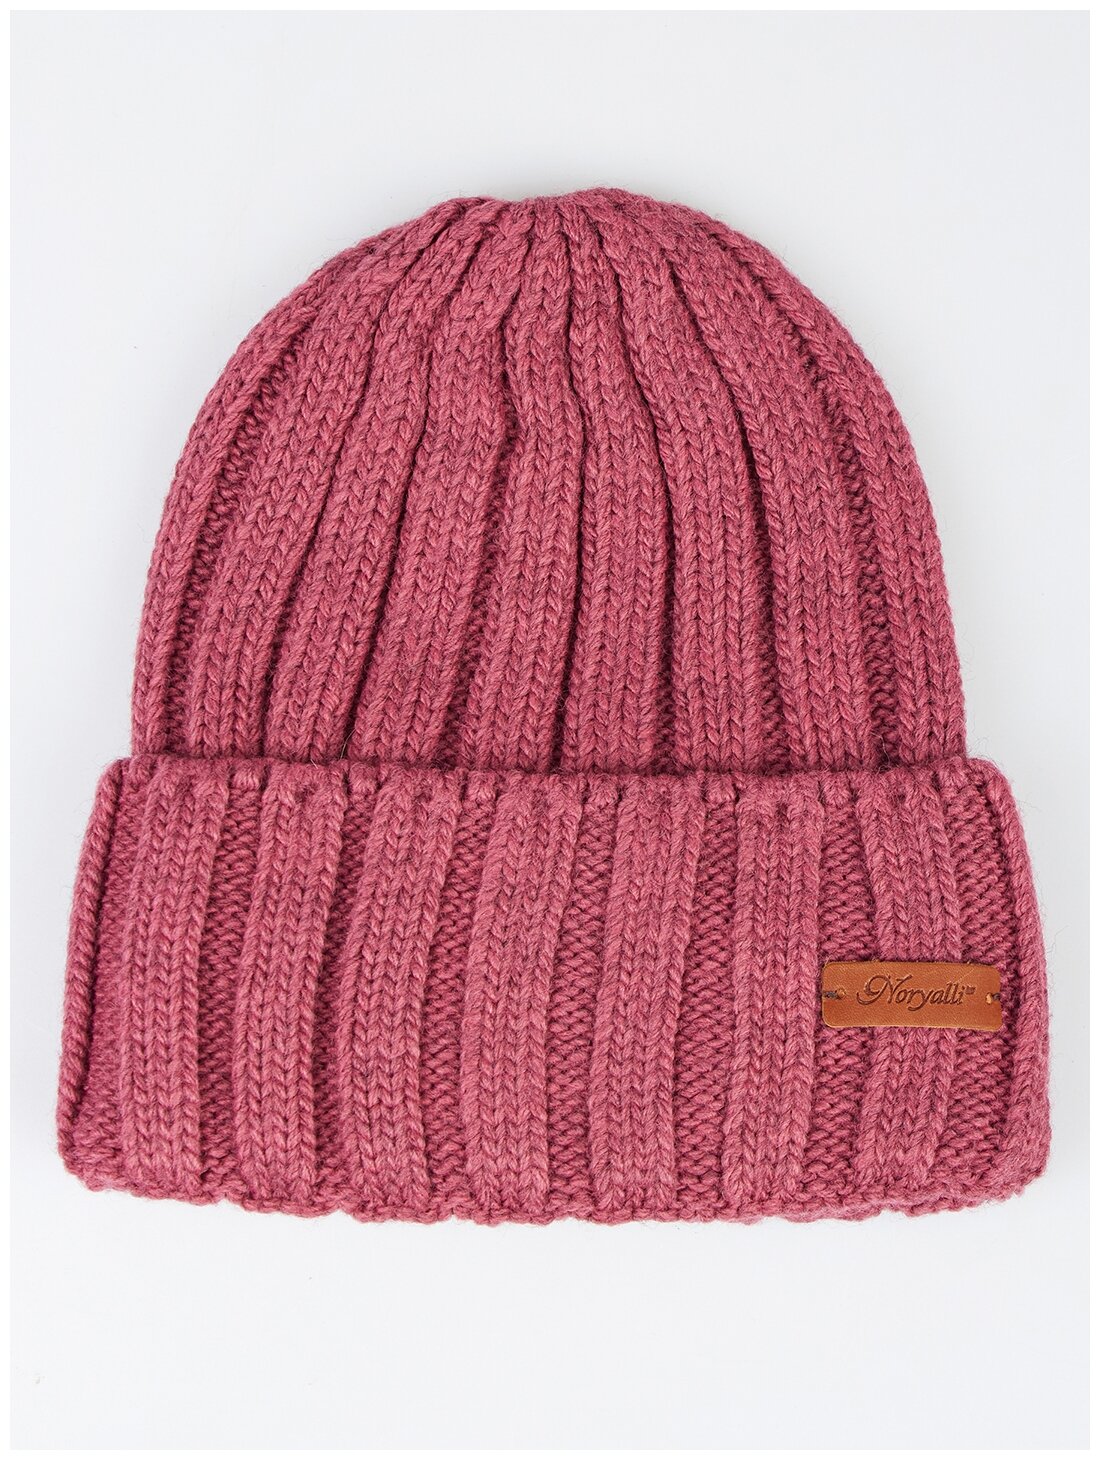 Шапка бини Noryalli, демисезон/зима, шерсть, вязаная, утепленная, размер OneSize, розовый - фотография № 1